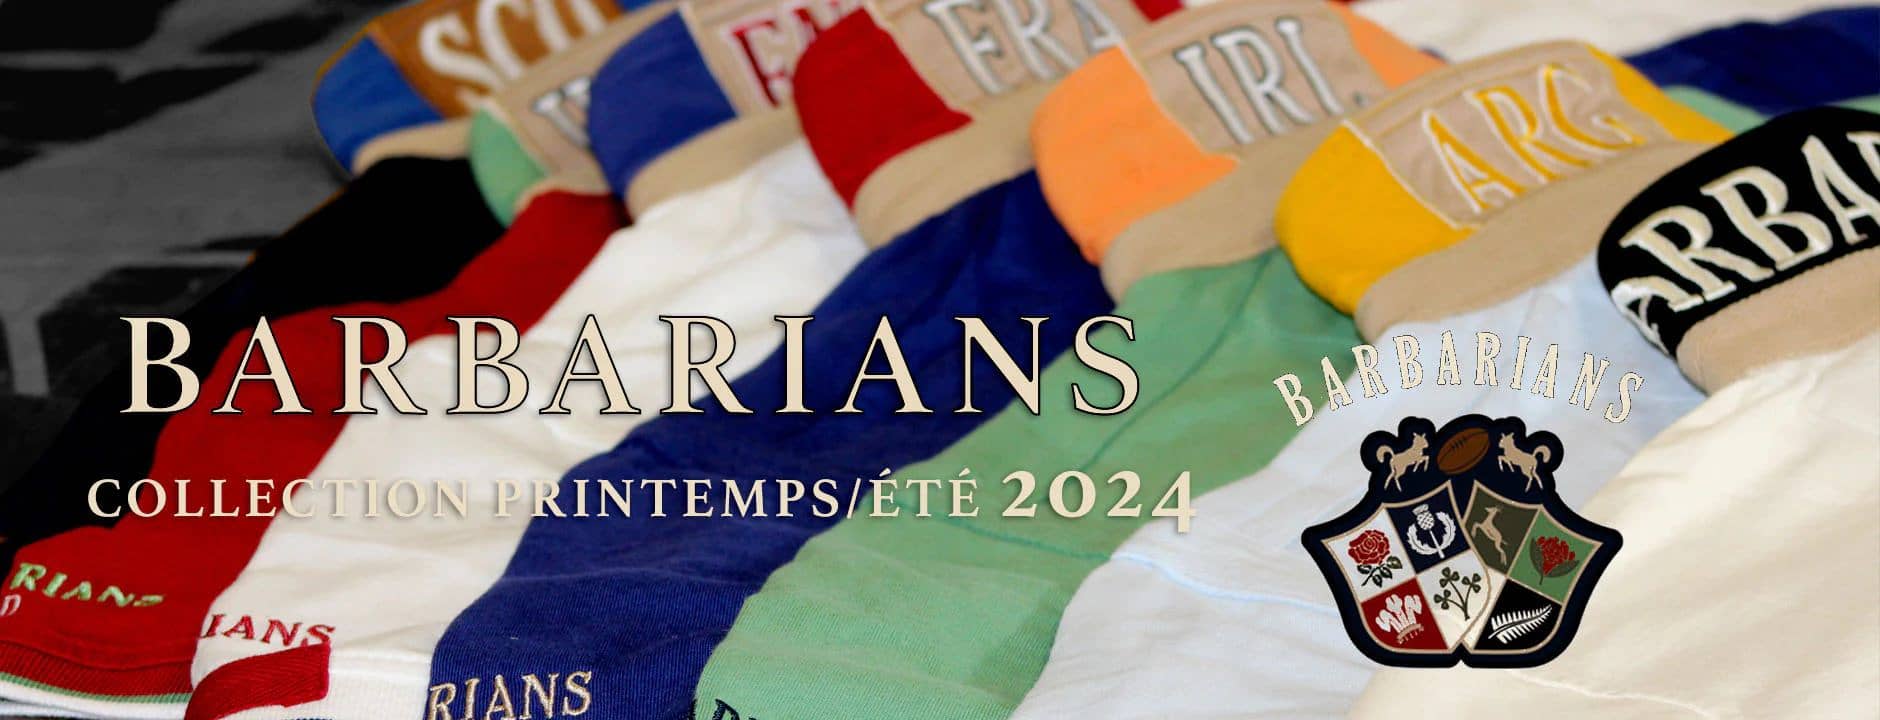 Découvrez la nouvelle collection Barbarians printemps/été 2024